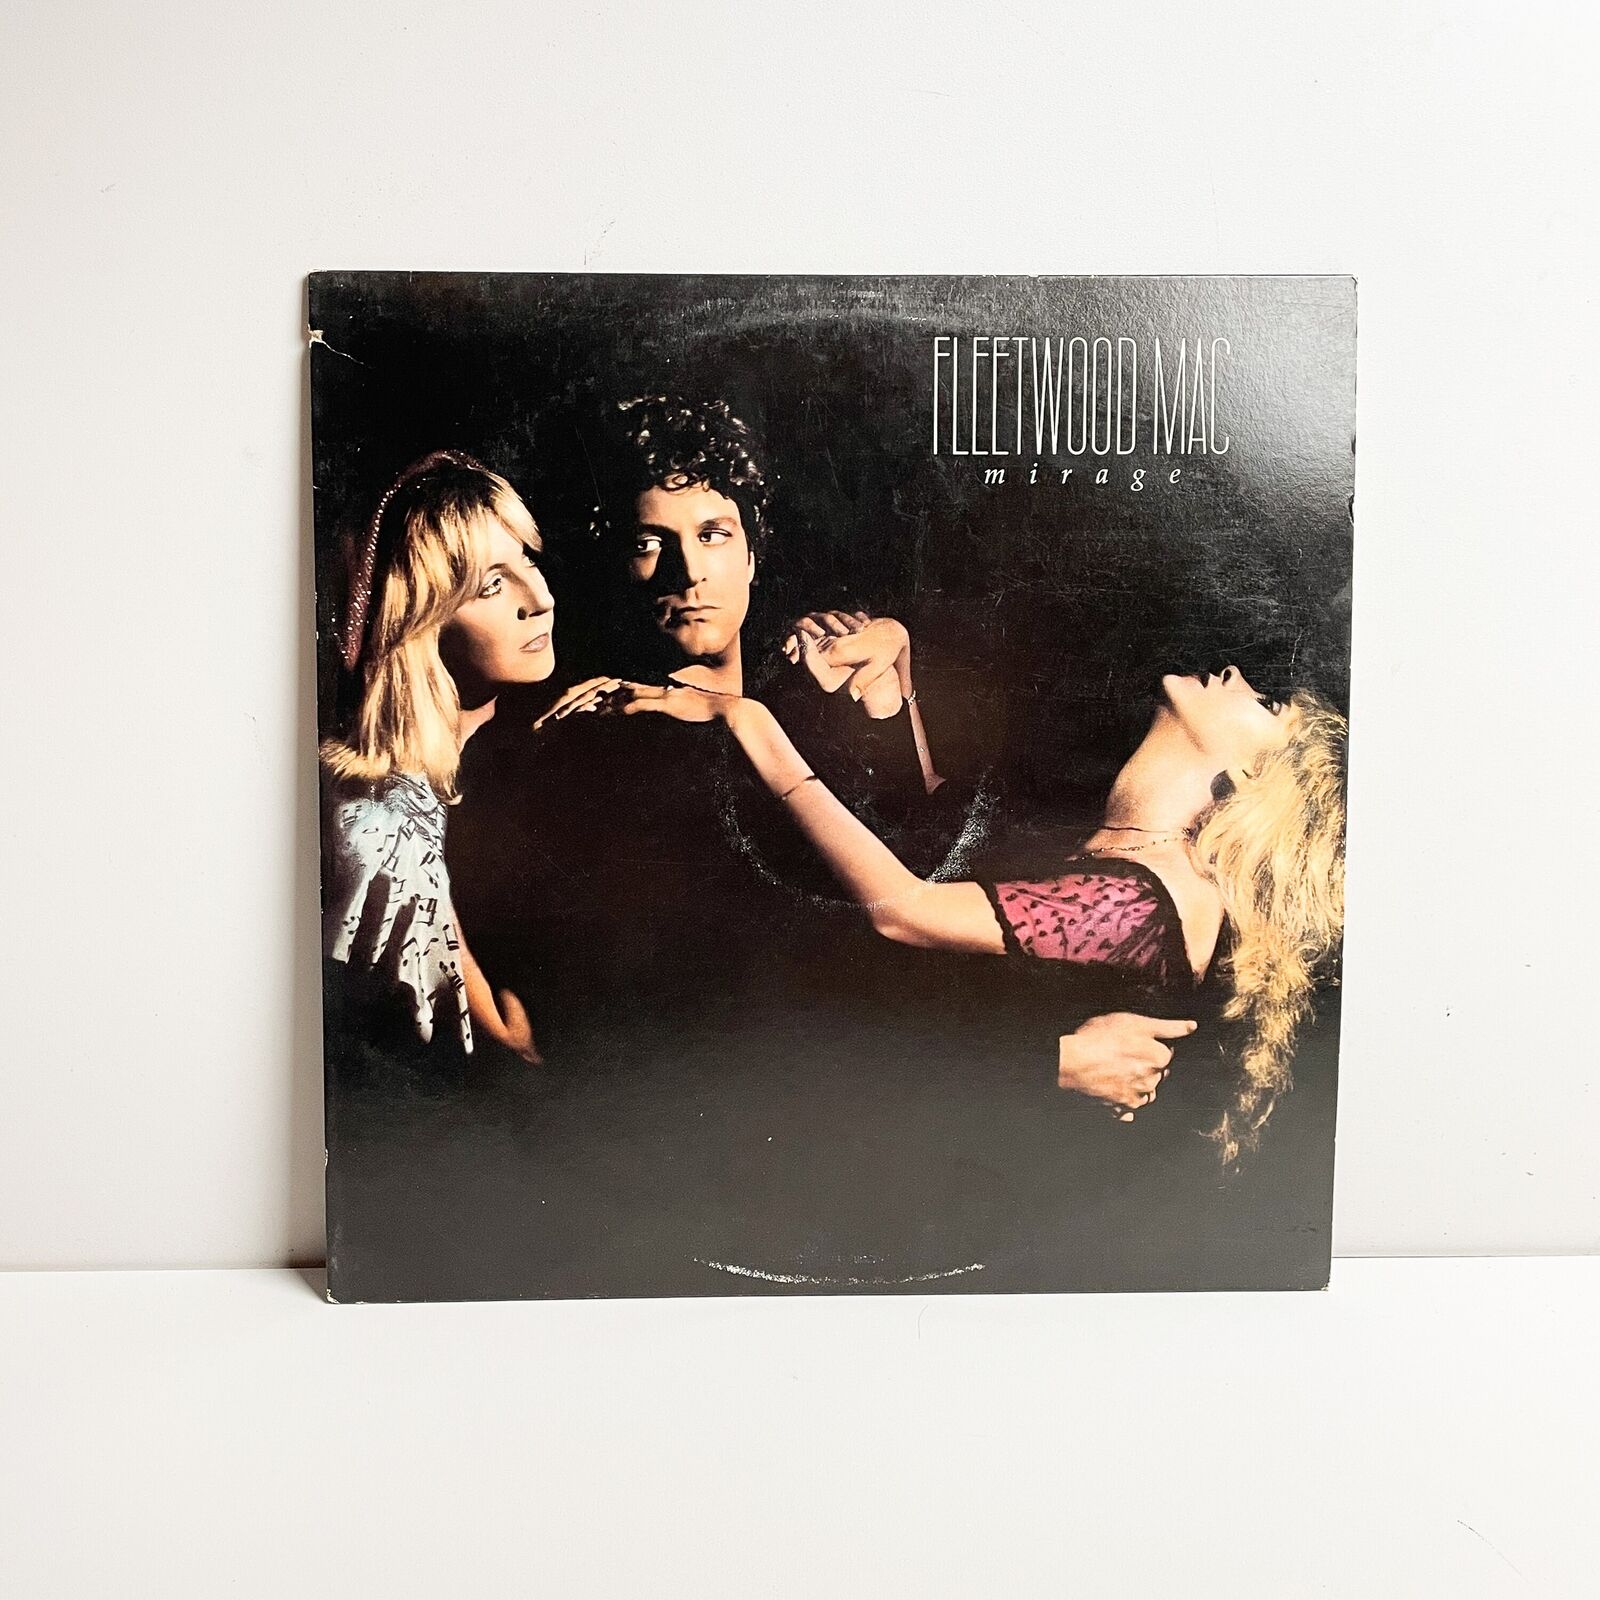 Fleetwood Mac - Mirage - Vinyl LP Record - 1982